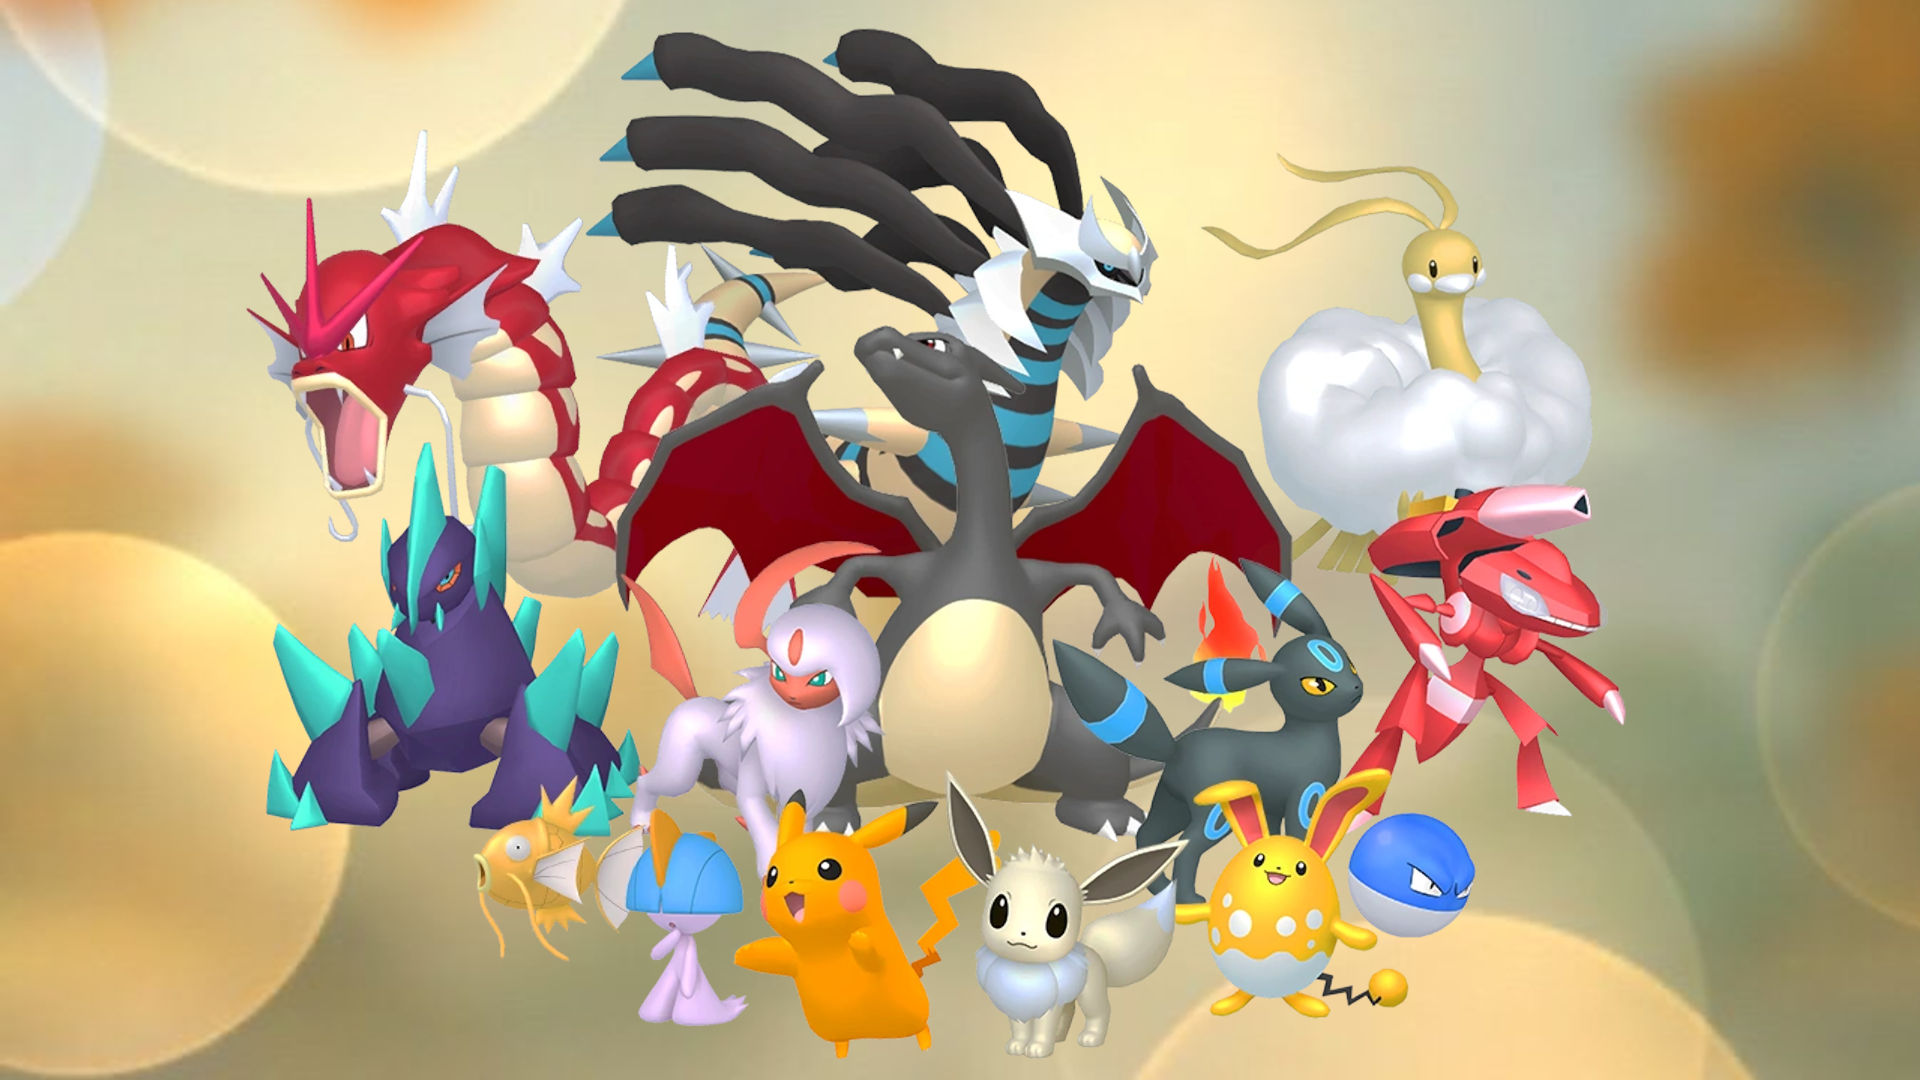 Shiny Gengar ( Gastly Evolution ) Pokemon Trade Go